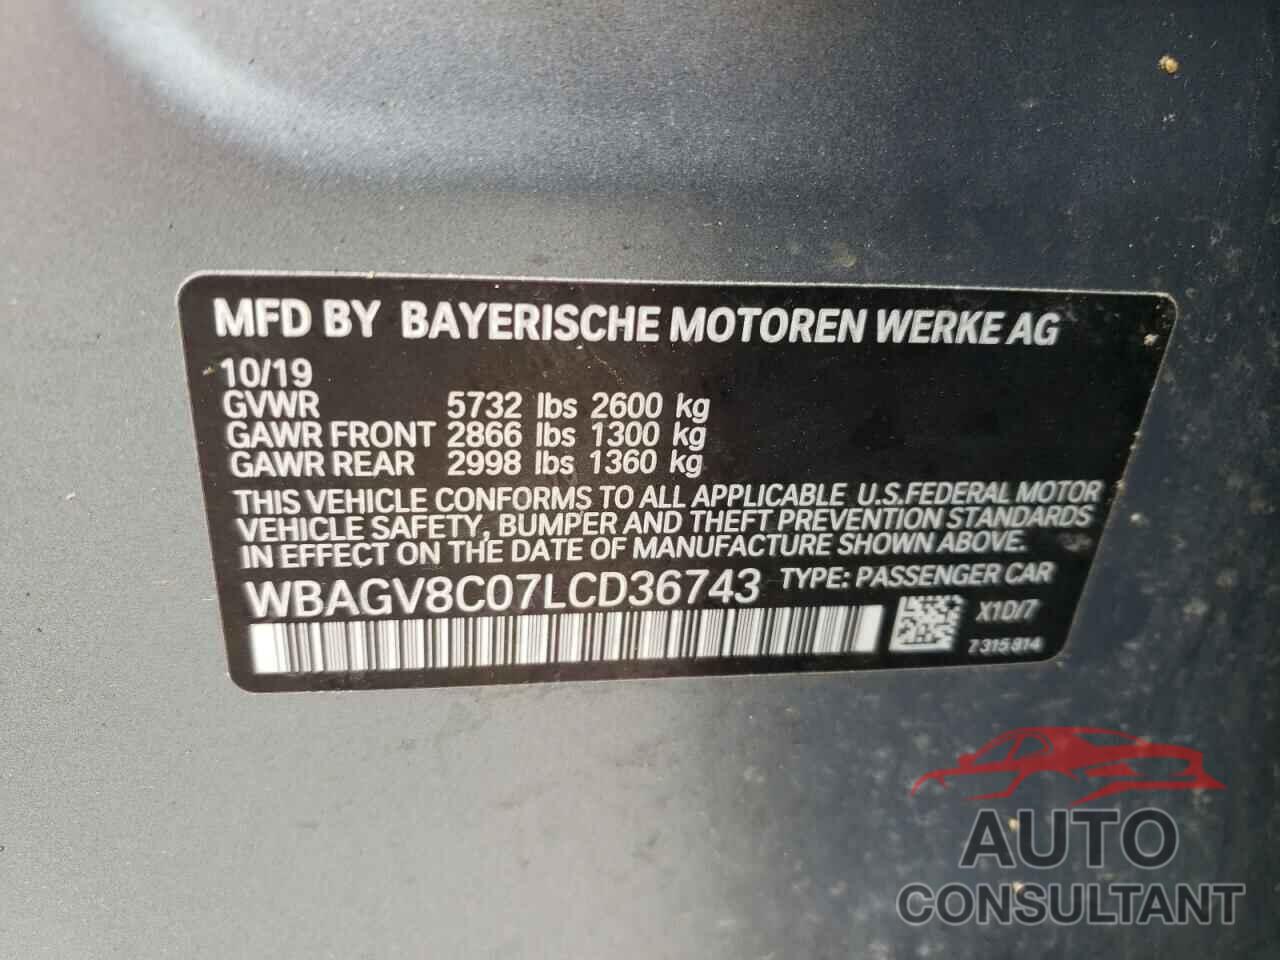 BMW M8 2020 - WBAGV8C07LCD36743